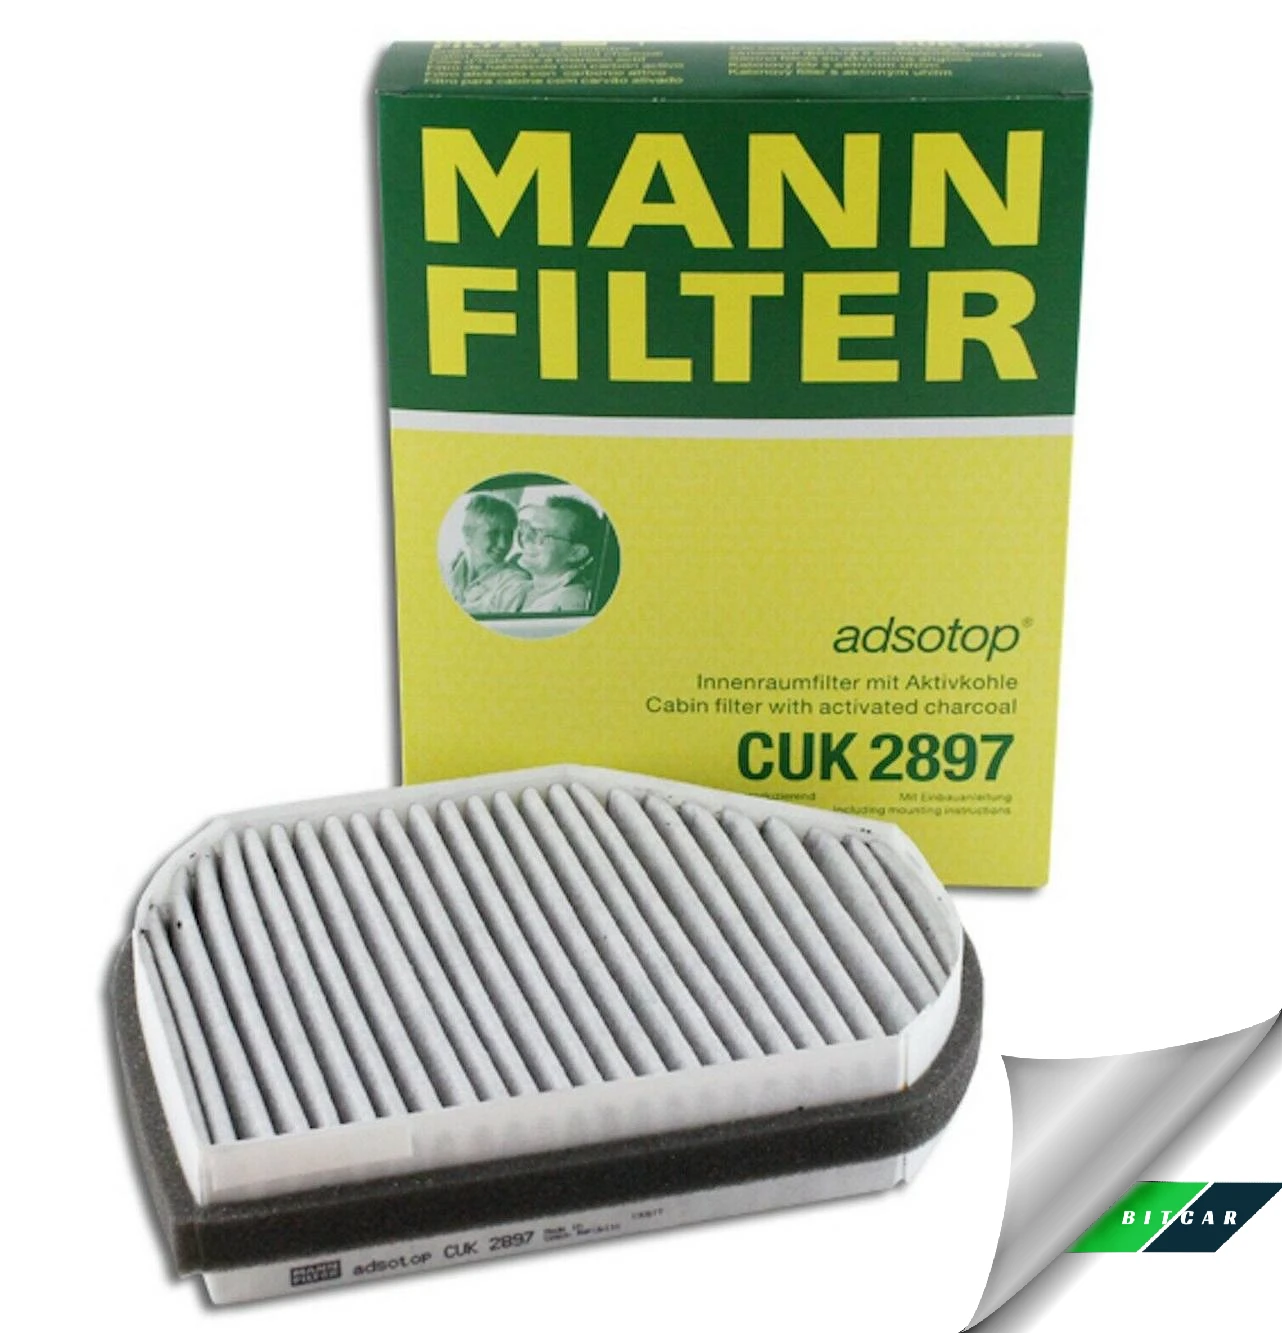 Mann Filter Cuk 2897